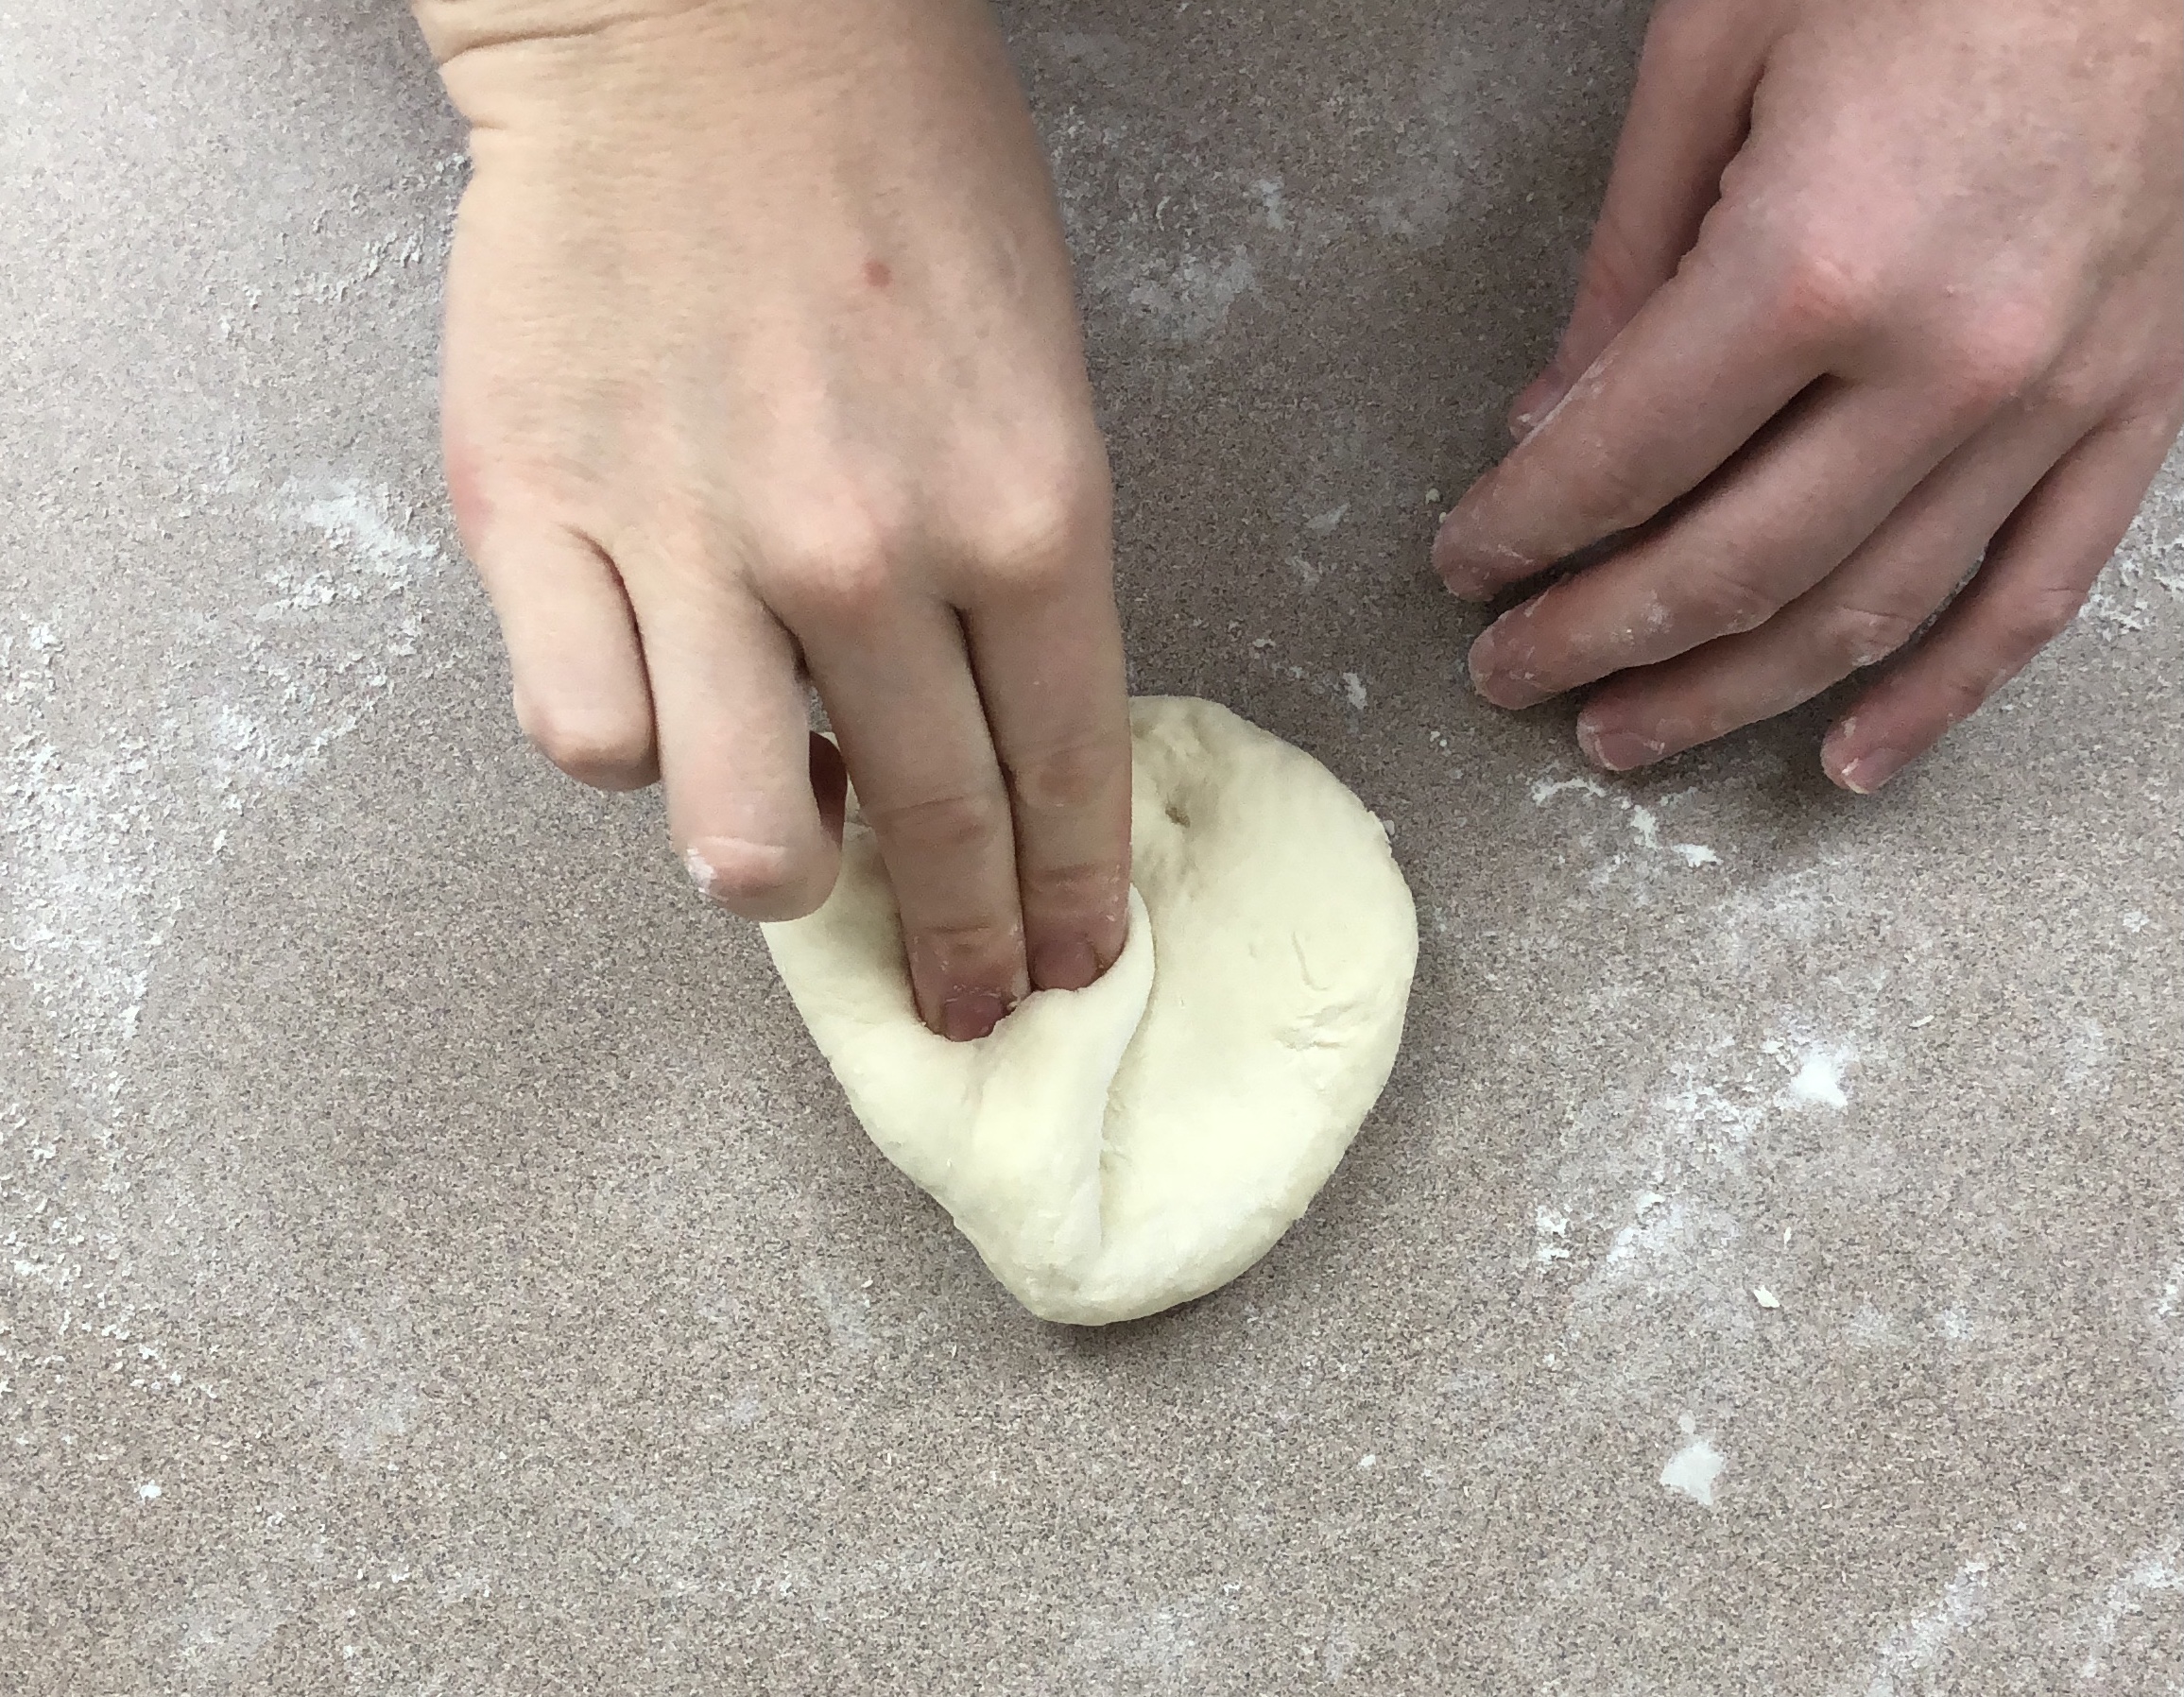 Shaping dough